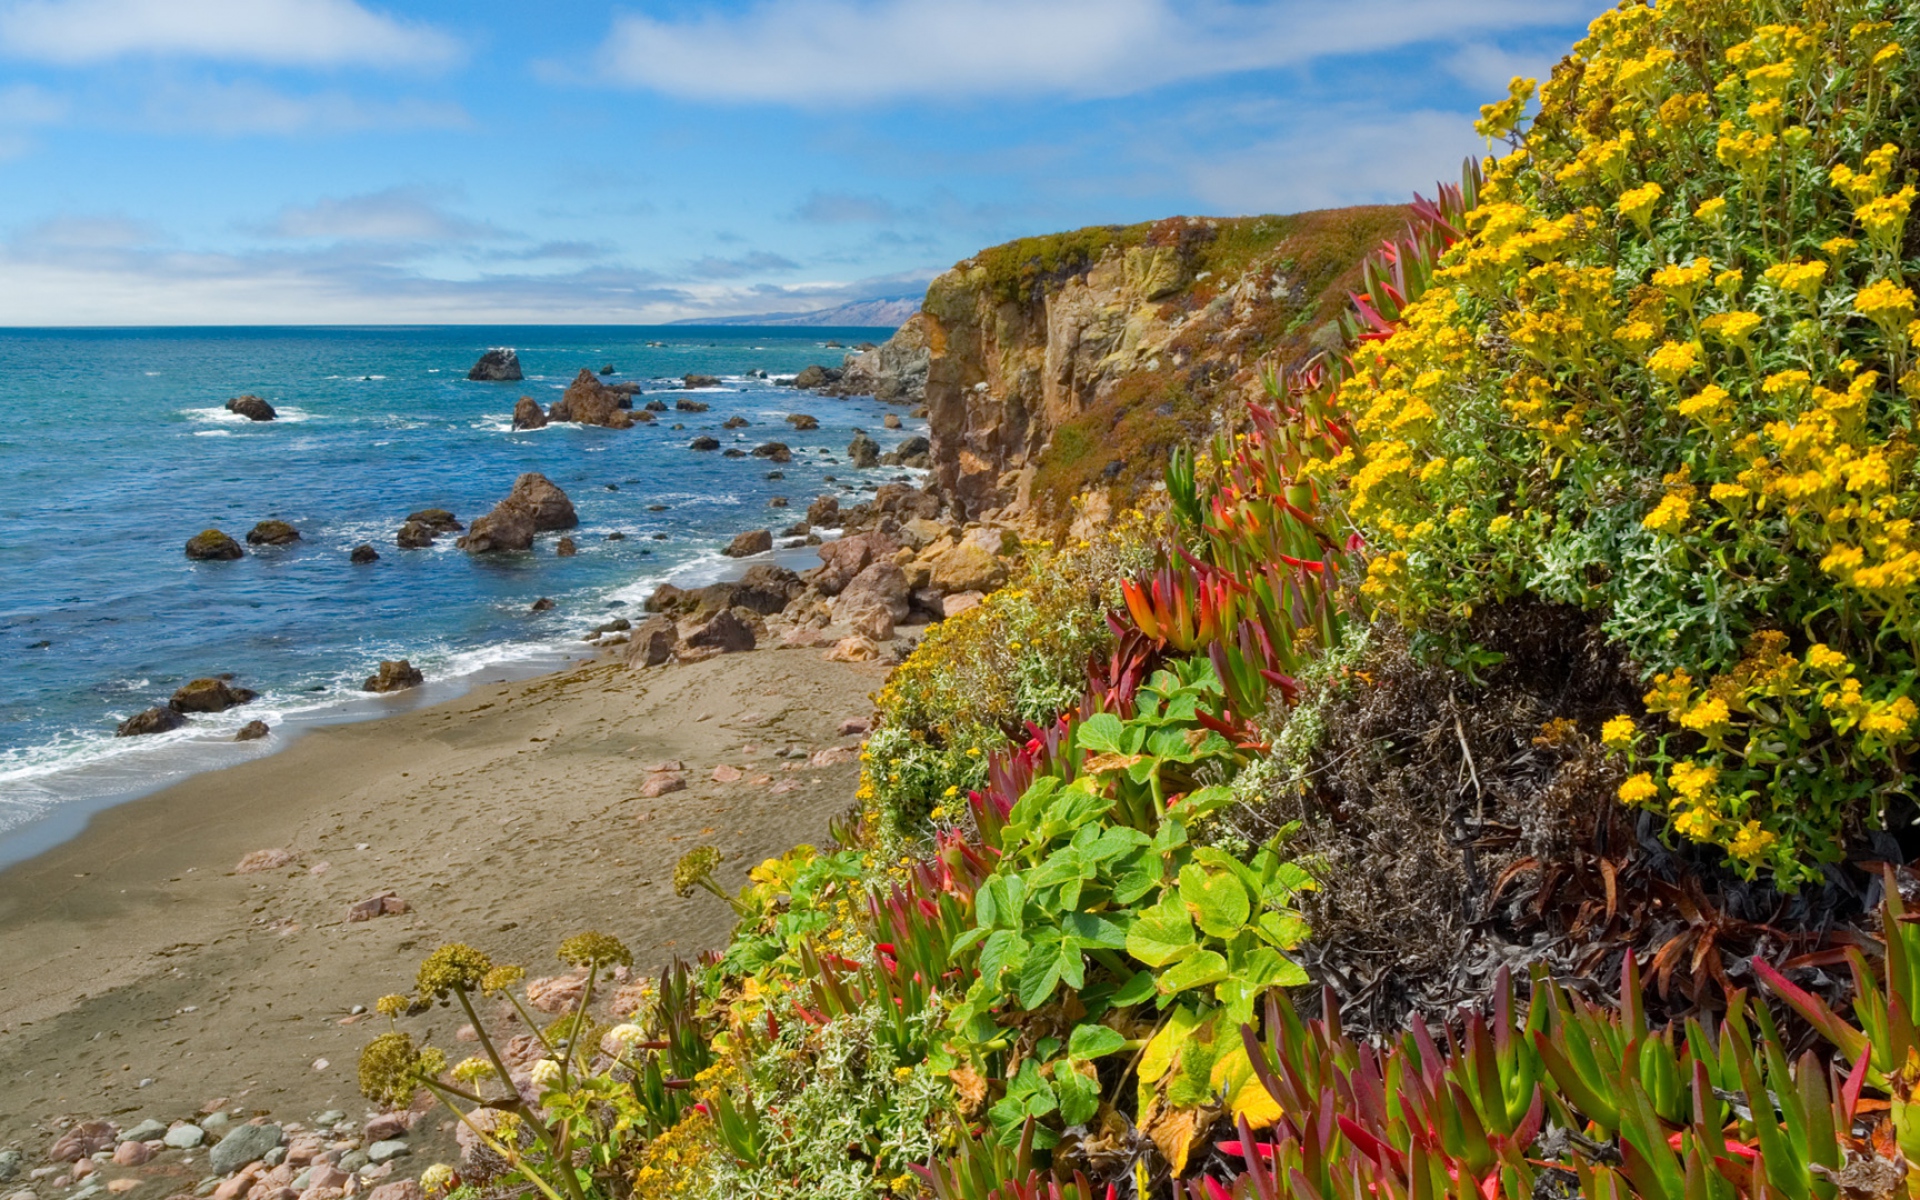 Картинки Цветы, растительность, побережье, пляж, камни, ясно, горизонт фото и обои на рабочий стол